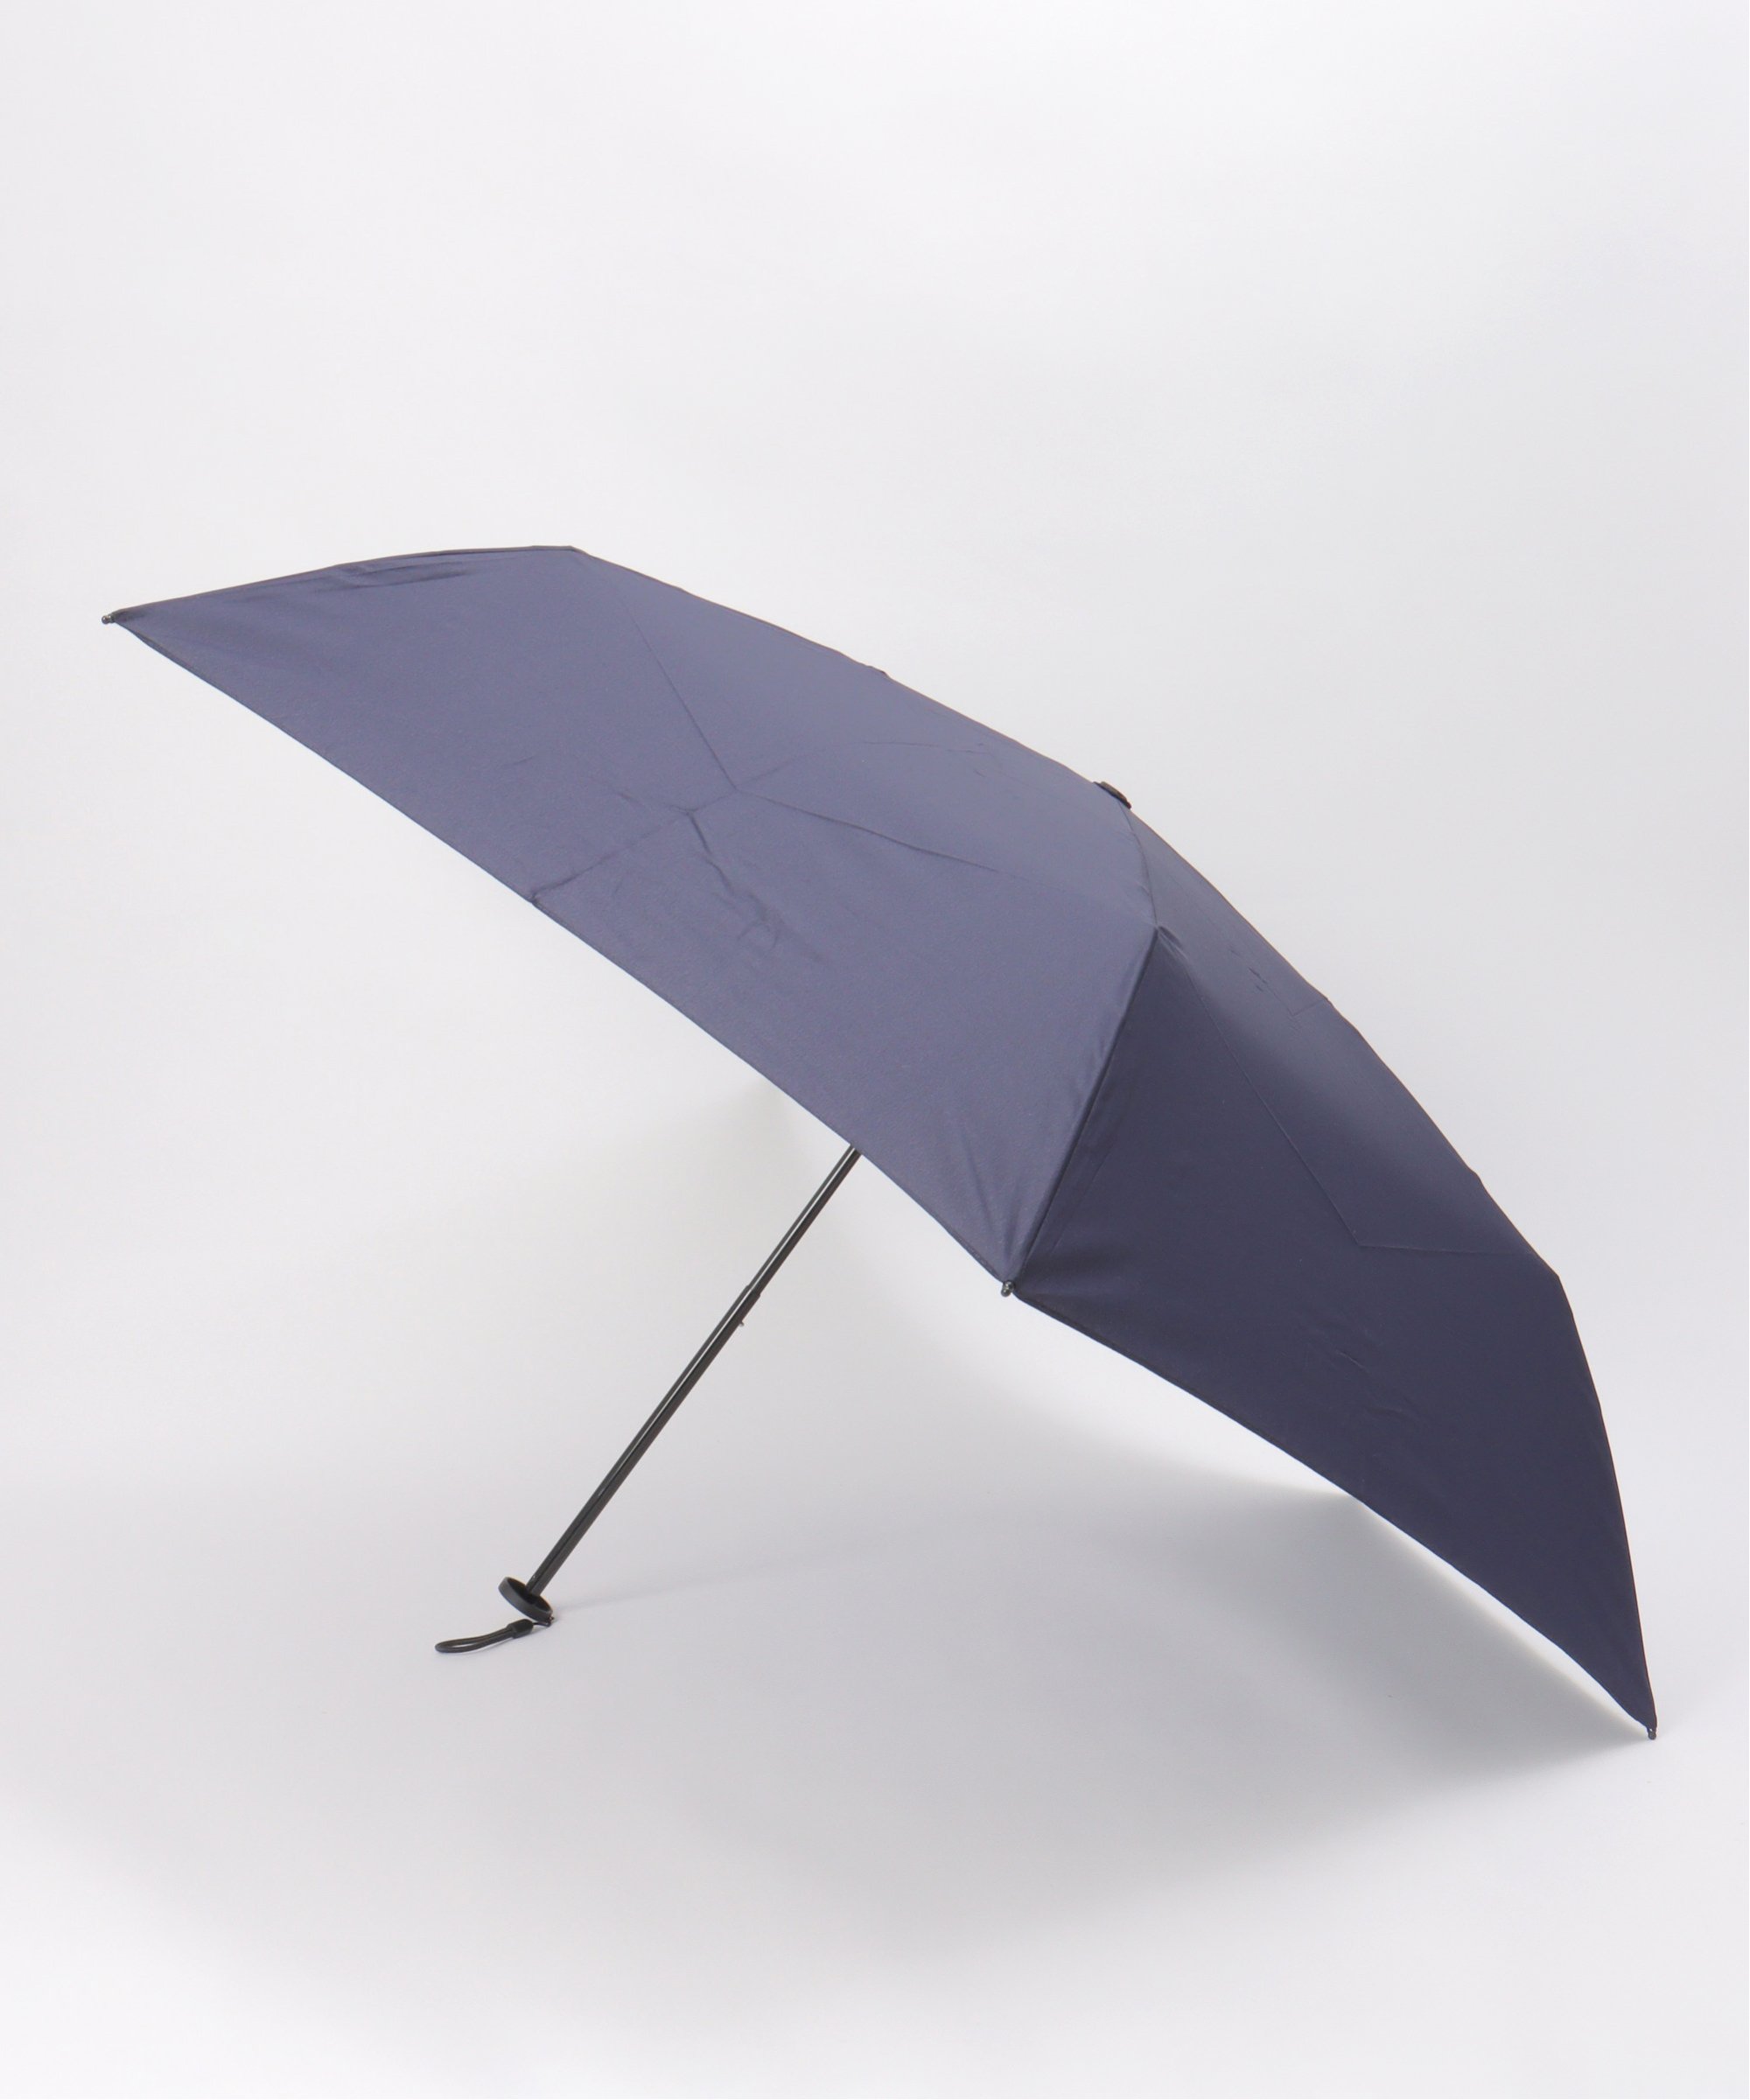 【UVカット】Wpc. ユニセックスエアライトアンブレラ 晴雨兼用 折りたたみ傘